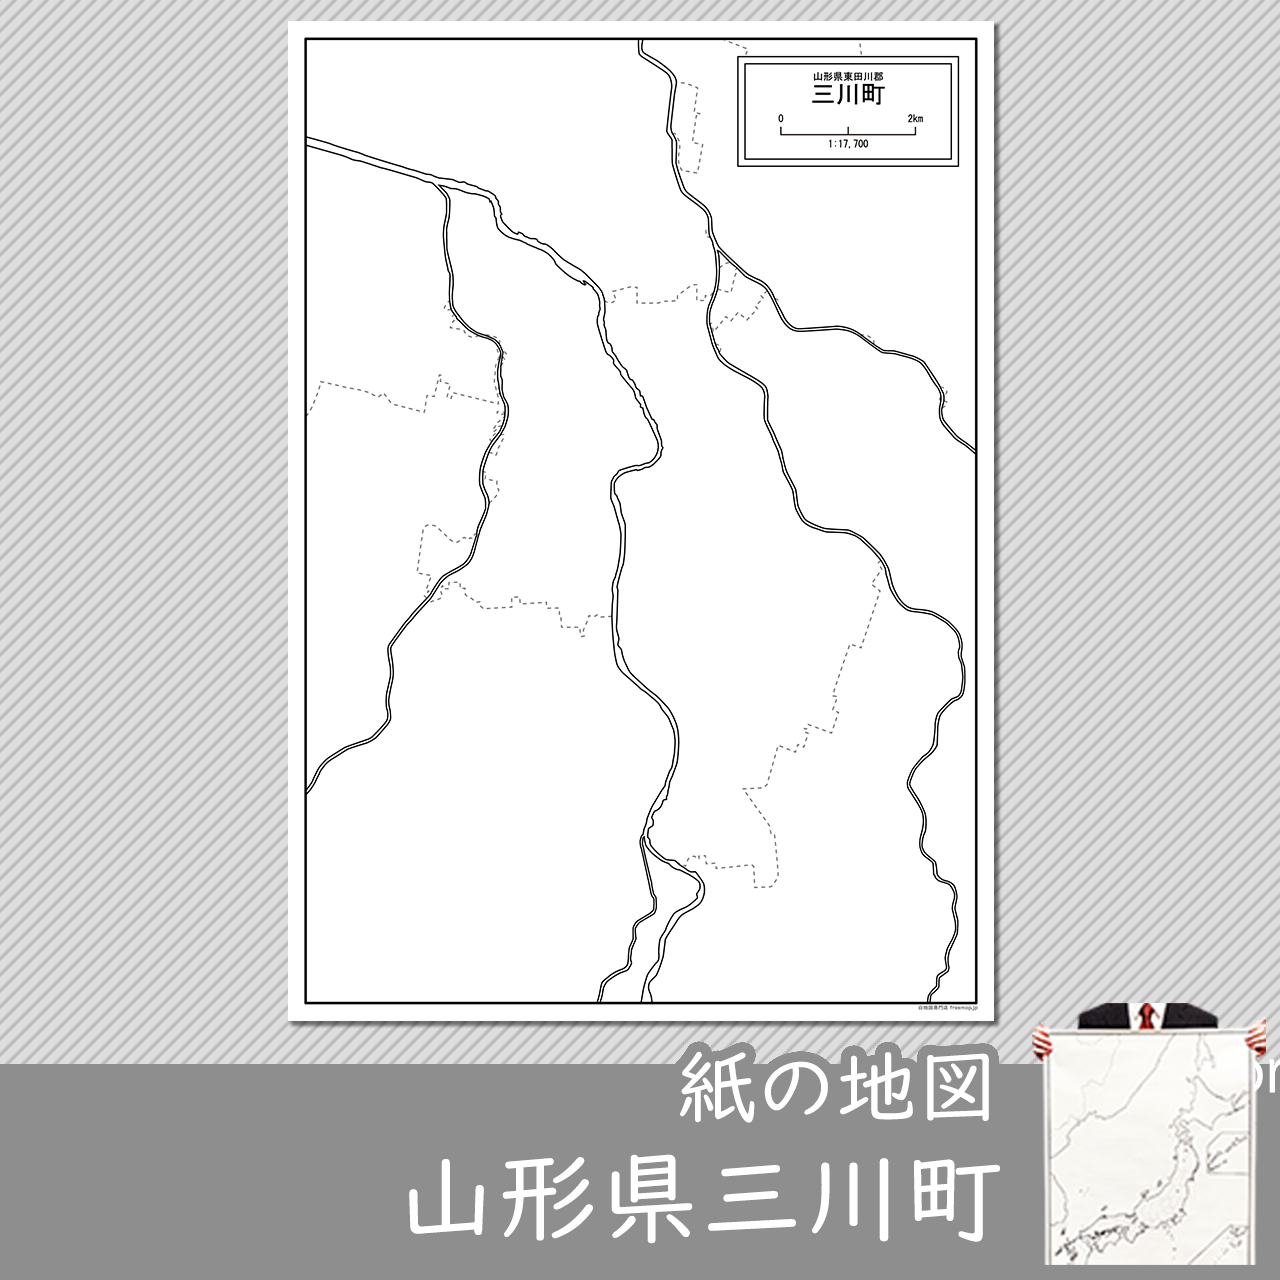 三川町の紙の白地図のサムネイル